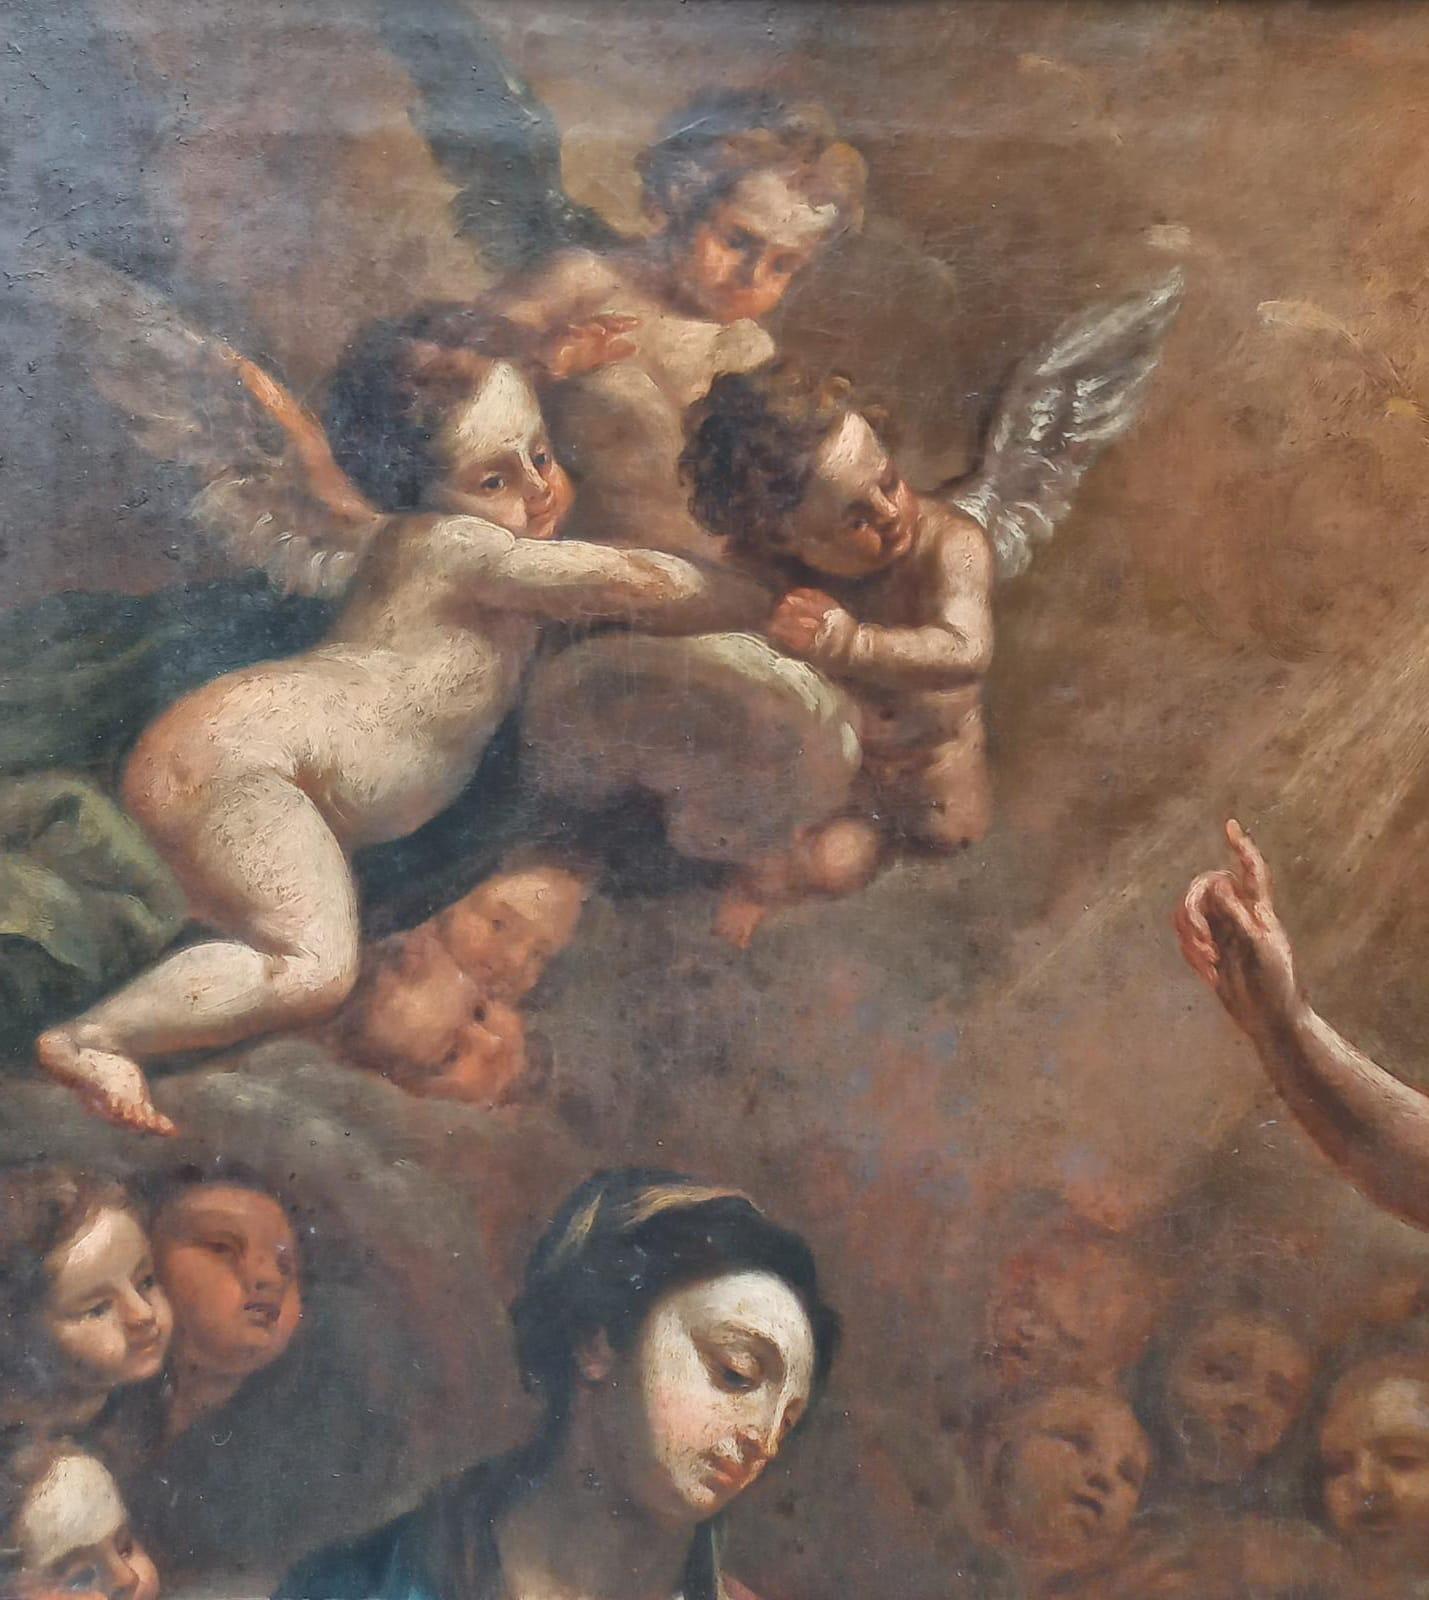 Annunciazione con angeli, scuola romana del XVII secolo, olio su carta applicata su tela, misure 78x58.5 cm.
Questo dipinto ad olio è stato realizzato su una carta, che, guardando in controluce, si capisce sia stata piegata a metà per molto tempo.